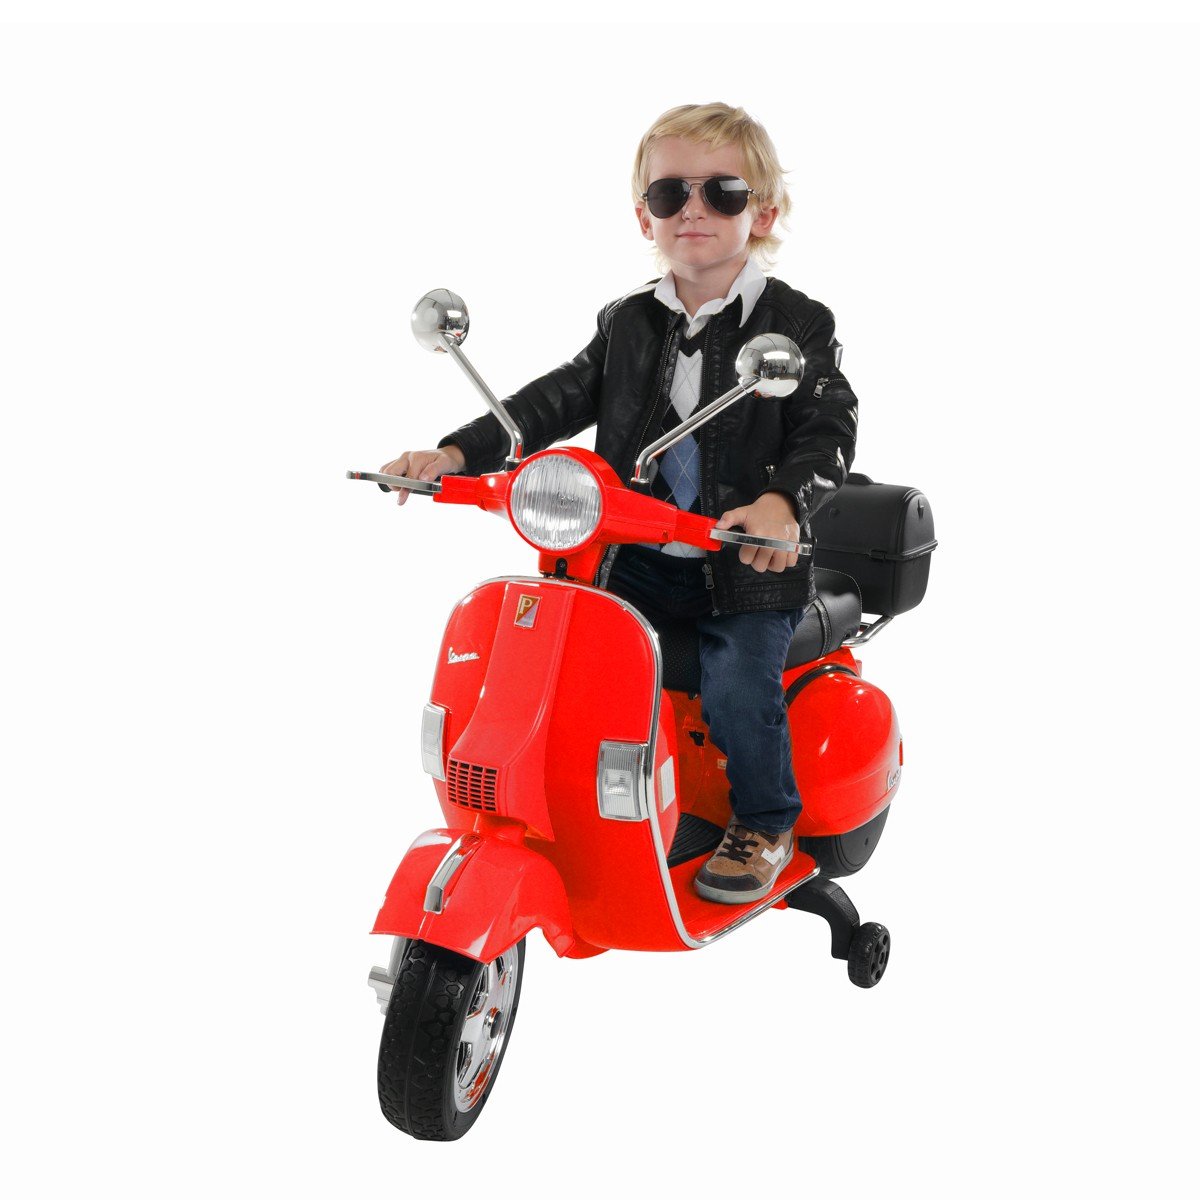 Jamara Kinder-Motorroller Ride On Vespa Motorrad Scooter mit E-Motor rot 